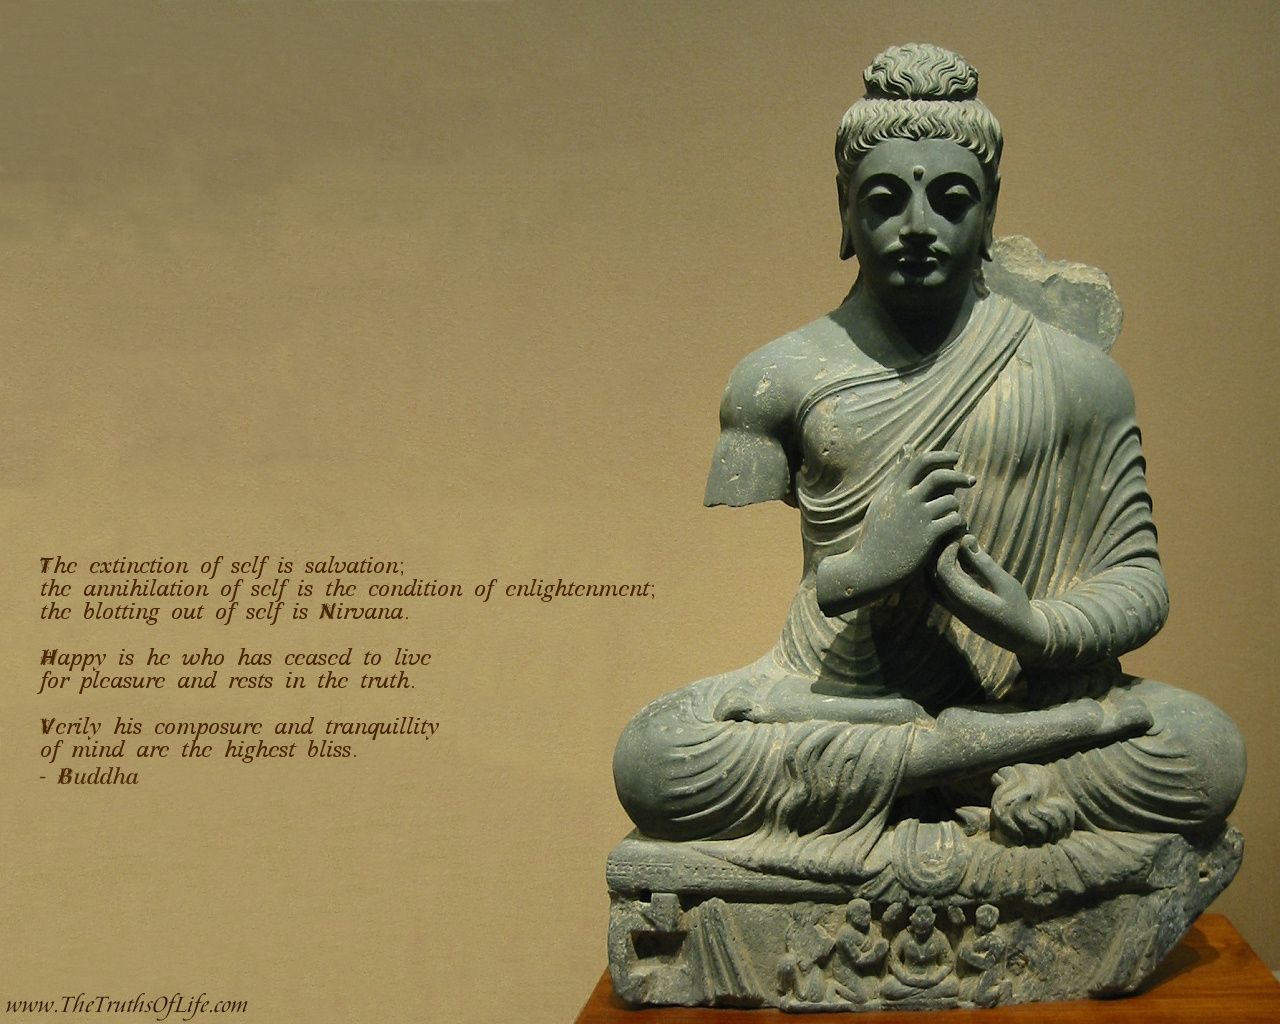 Fondos de budismo - Budismo, budista, fondo de pantalla de Buda